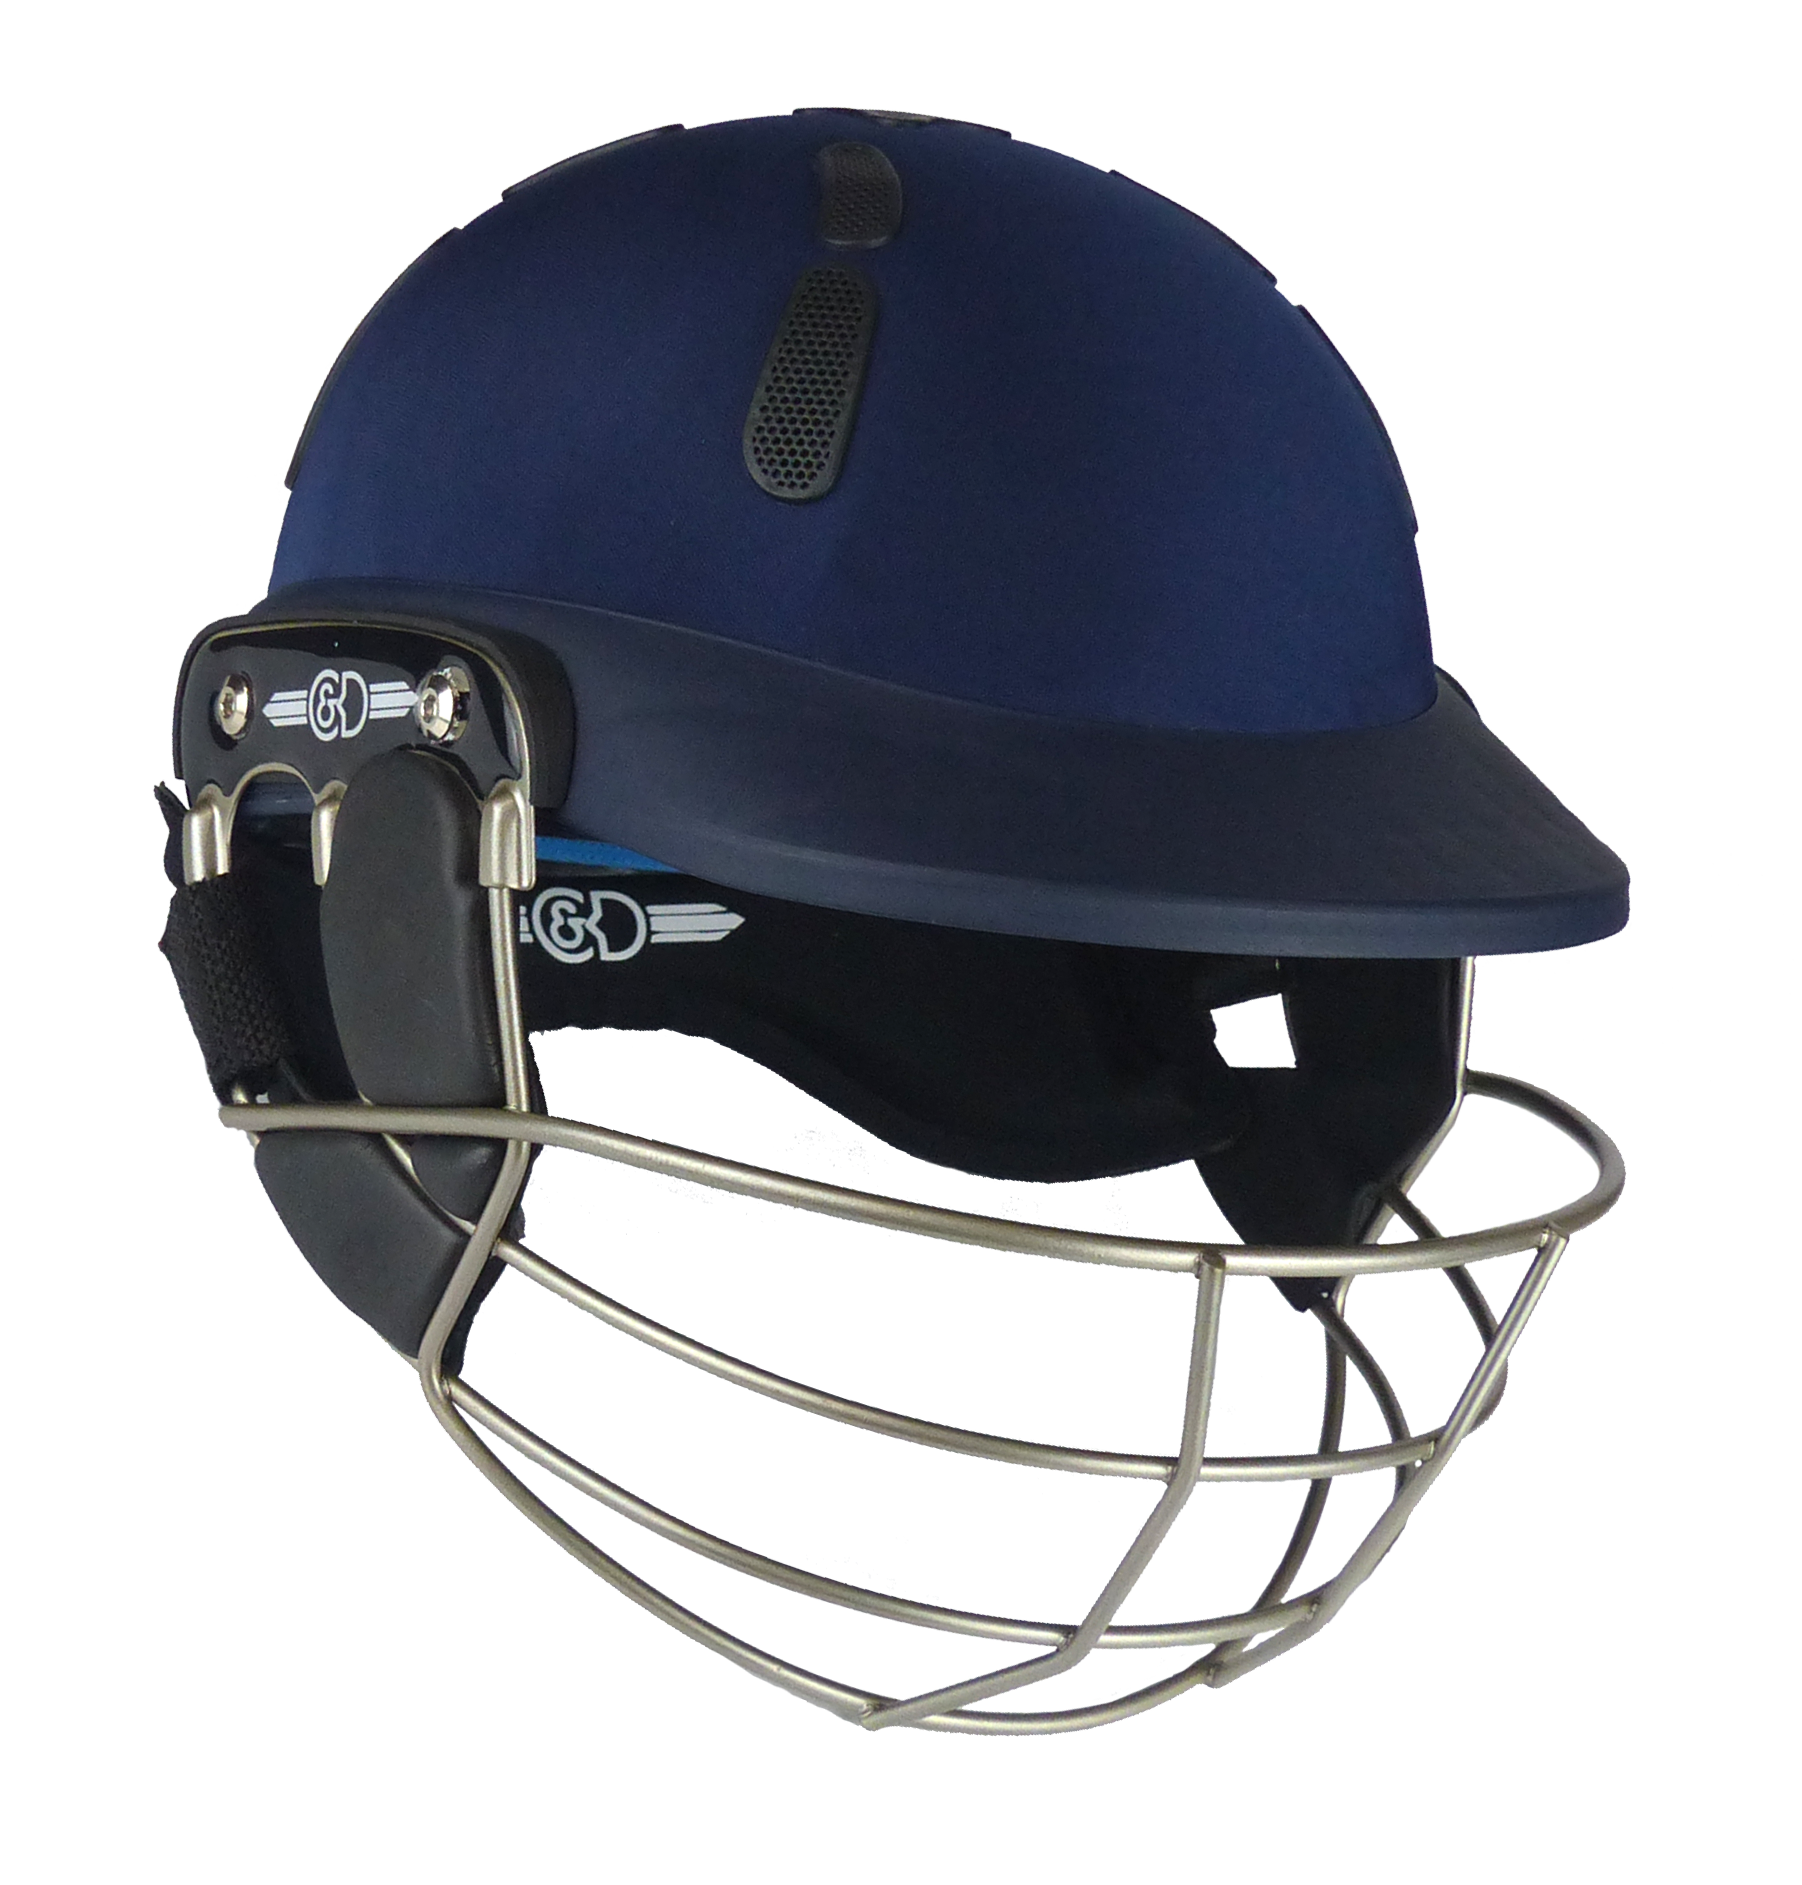 C&D The Albion Z Ti Helmet